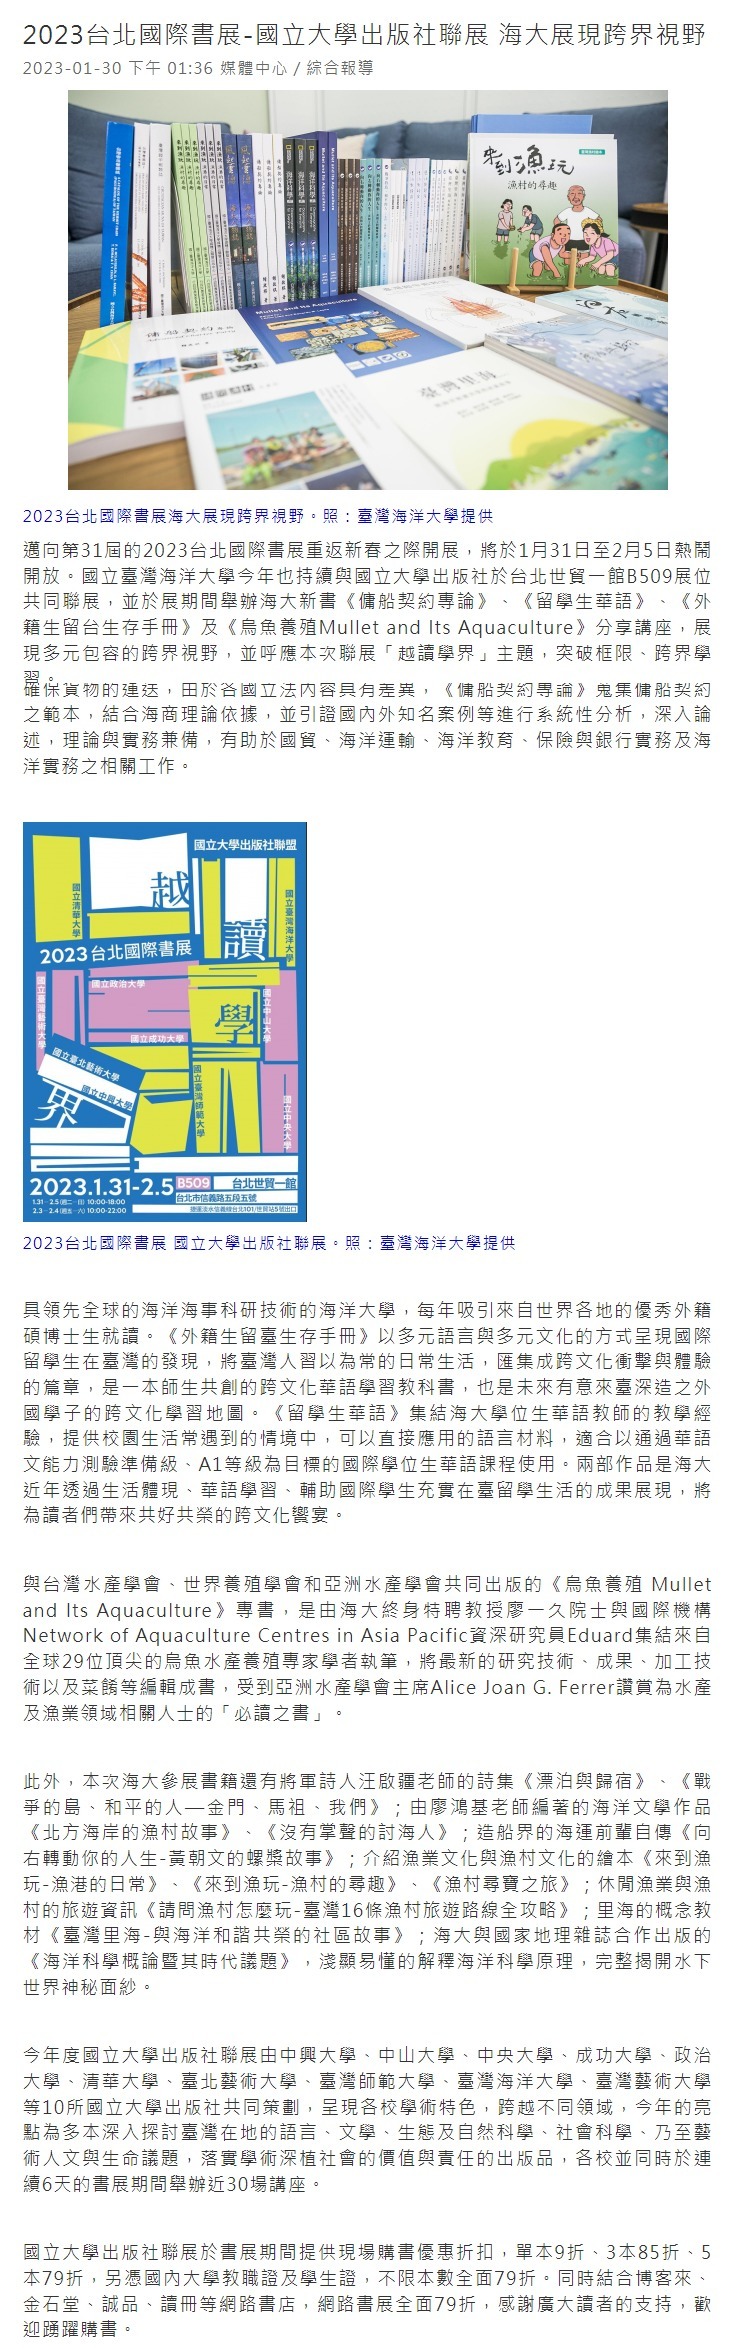 2023台北國際書展-國立大學出版社聯展 海大展現跨界視野